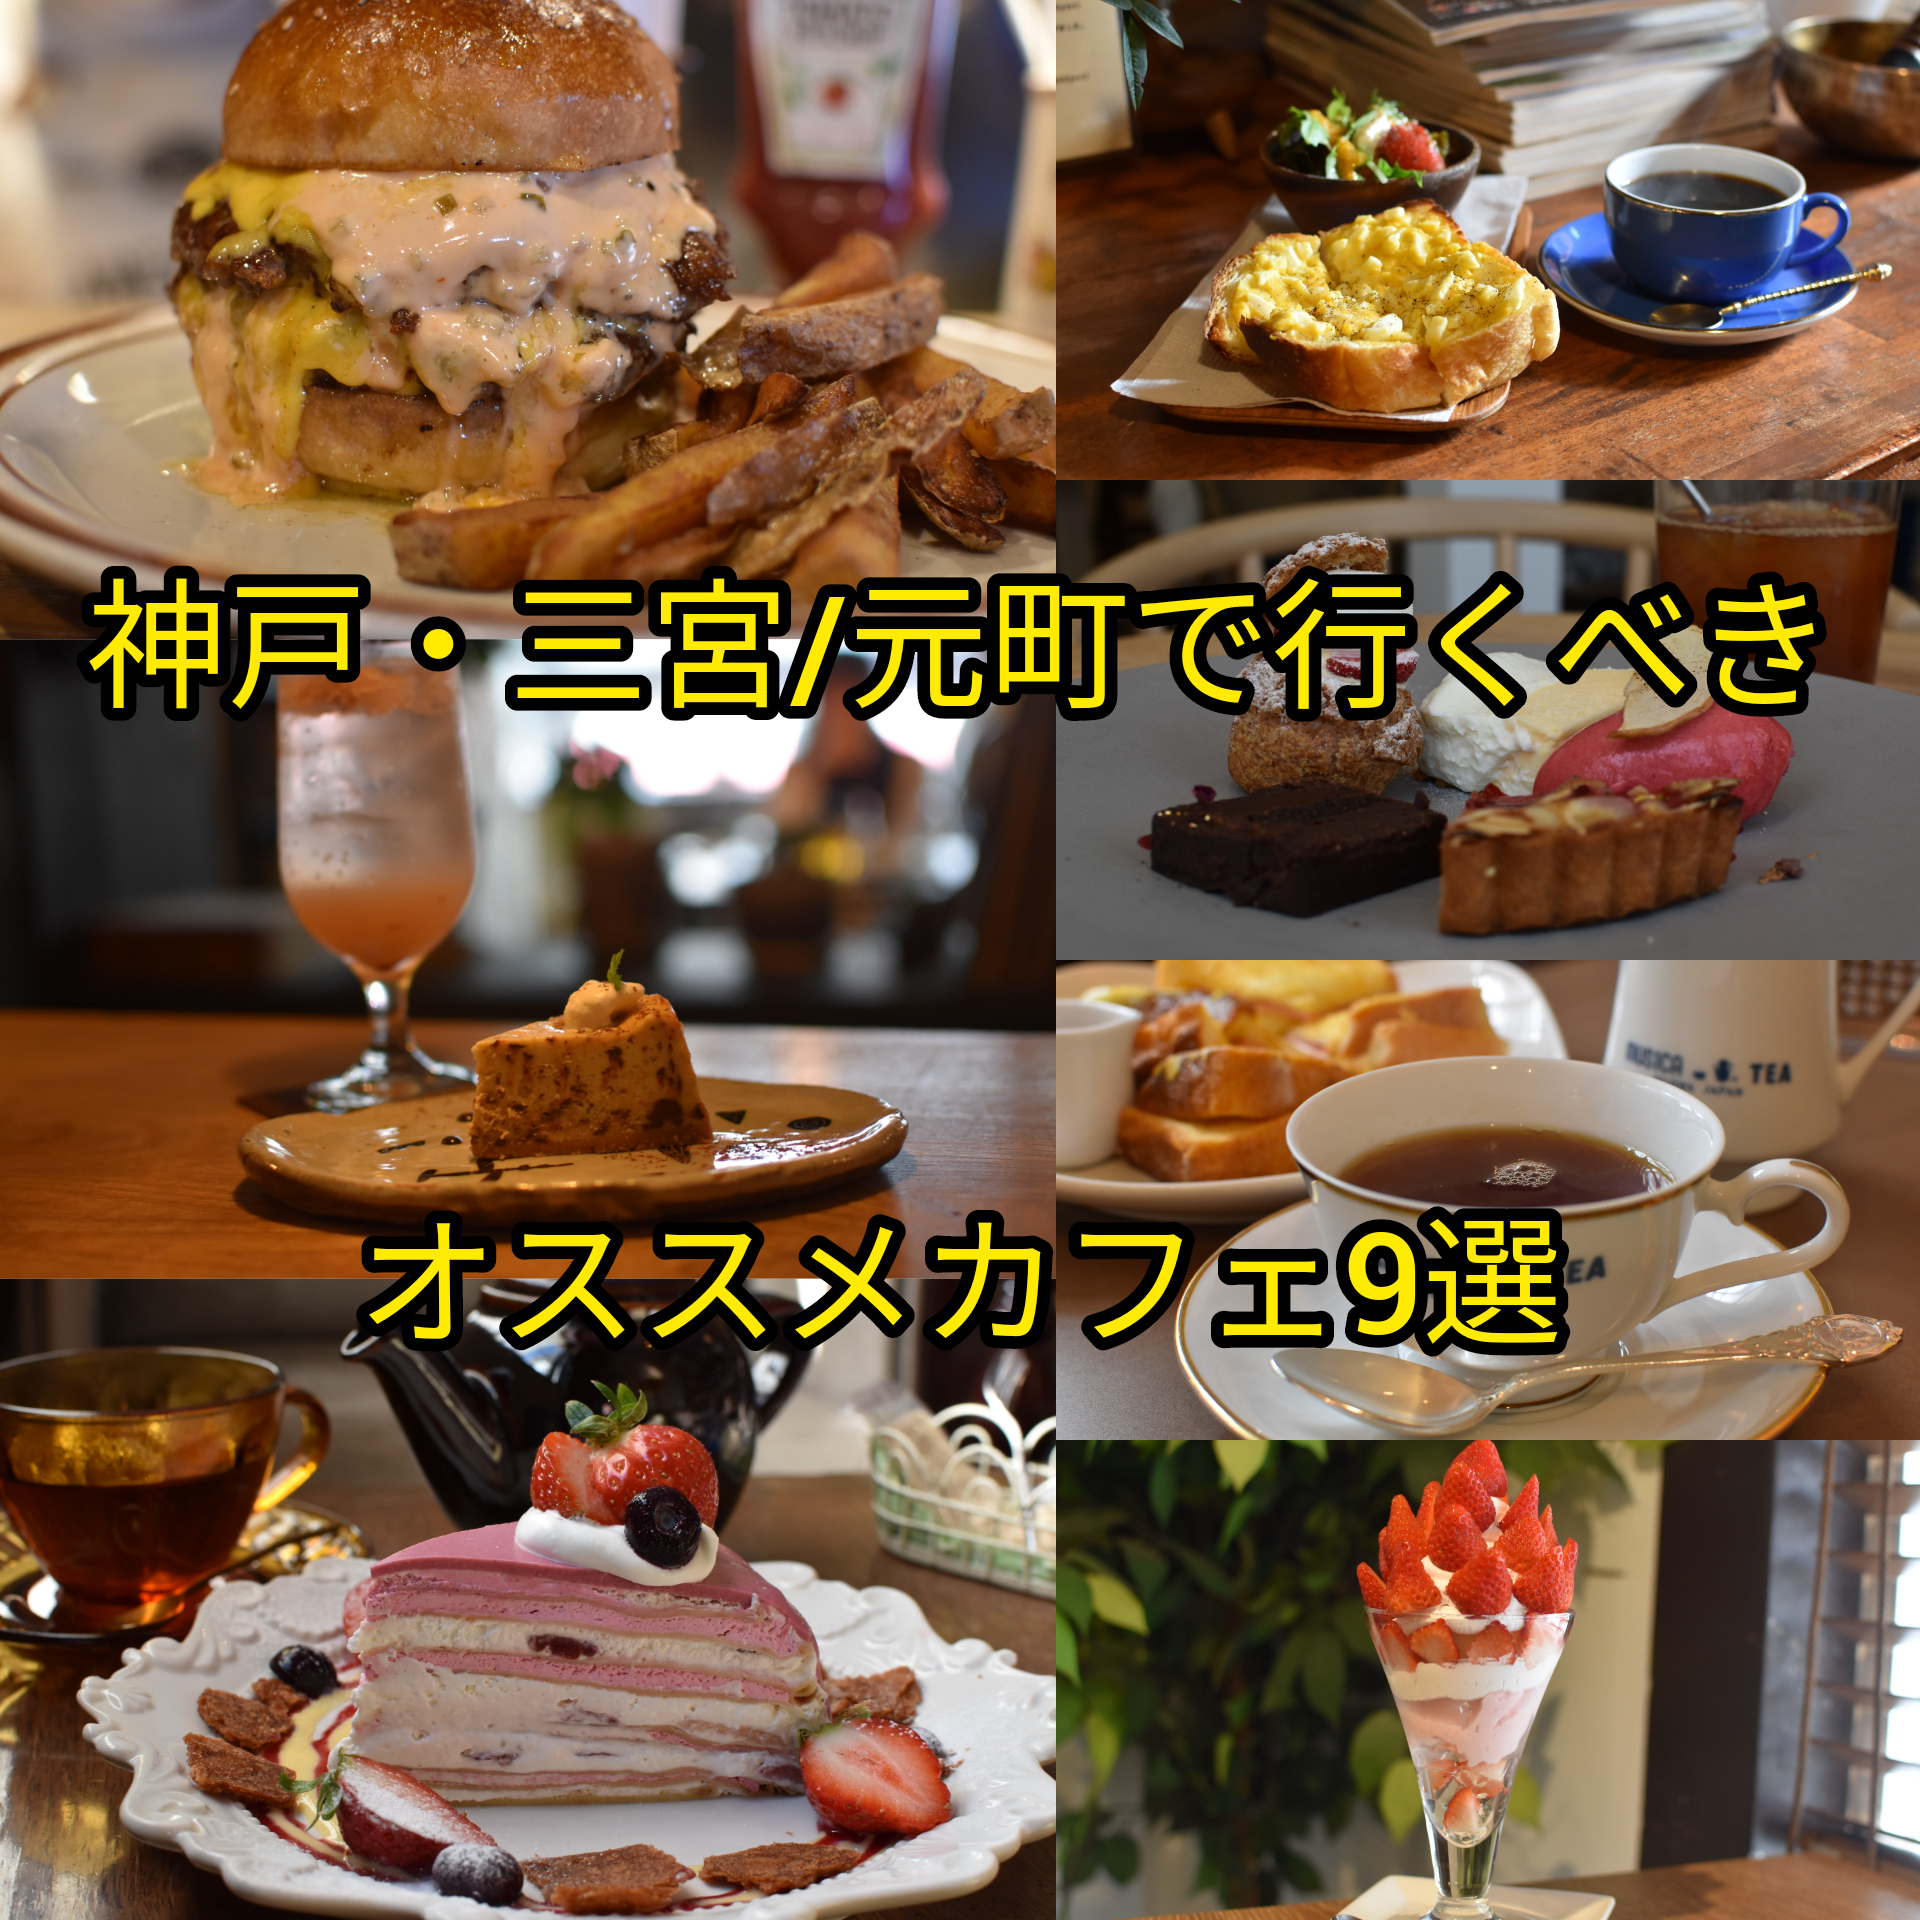 まとめ記事 神戸 三宮 元町に行ったら行くべきオススメカフェ9選 よっしー 関西グルメの食べ歩き三味